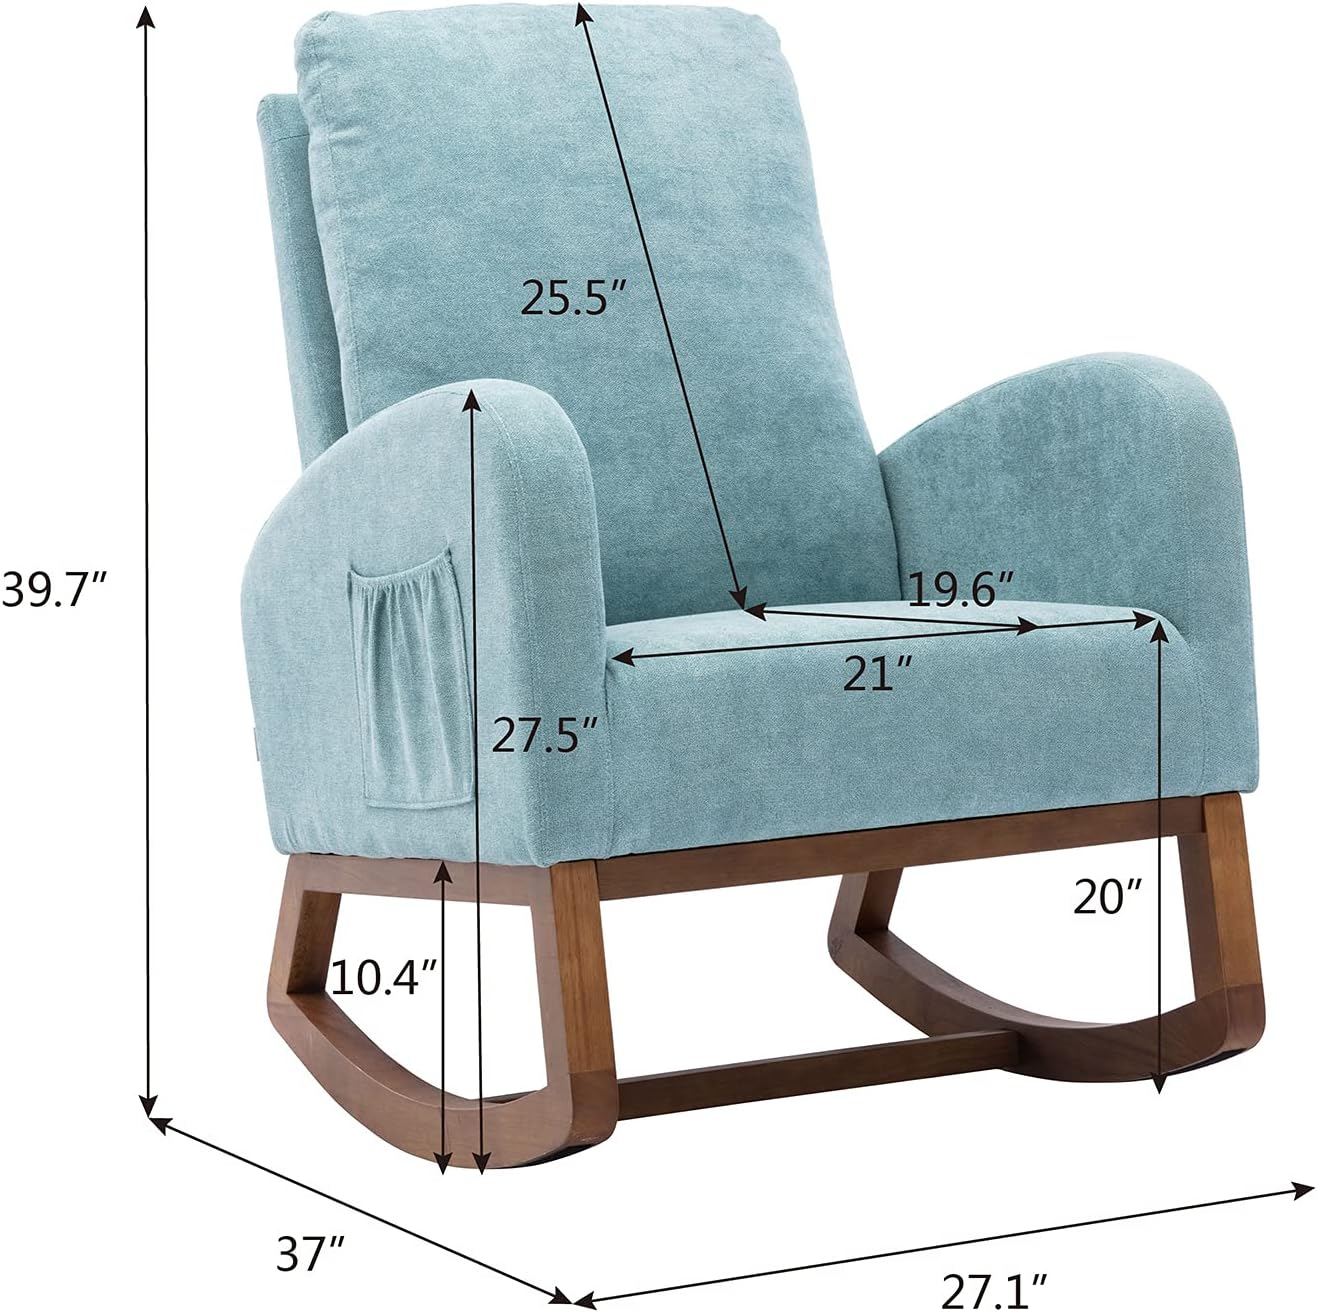 Mecedora silla mecedora tapizada capitonada para guardería cómoda mece -  VIRTUAL MUEBLES